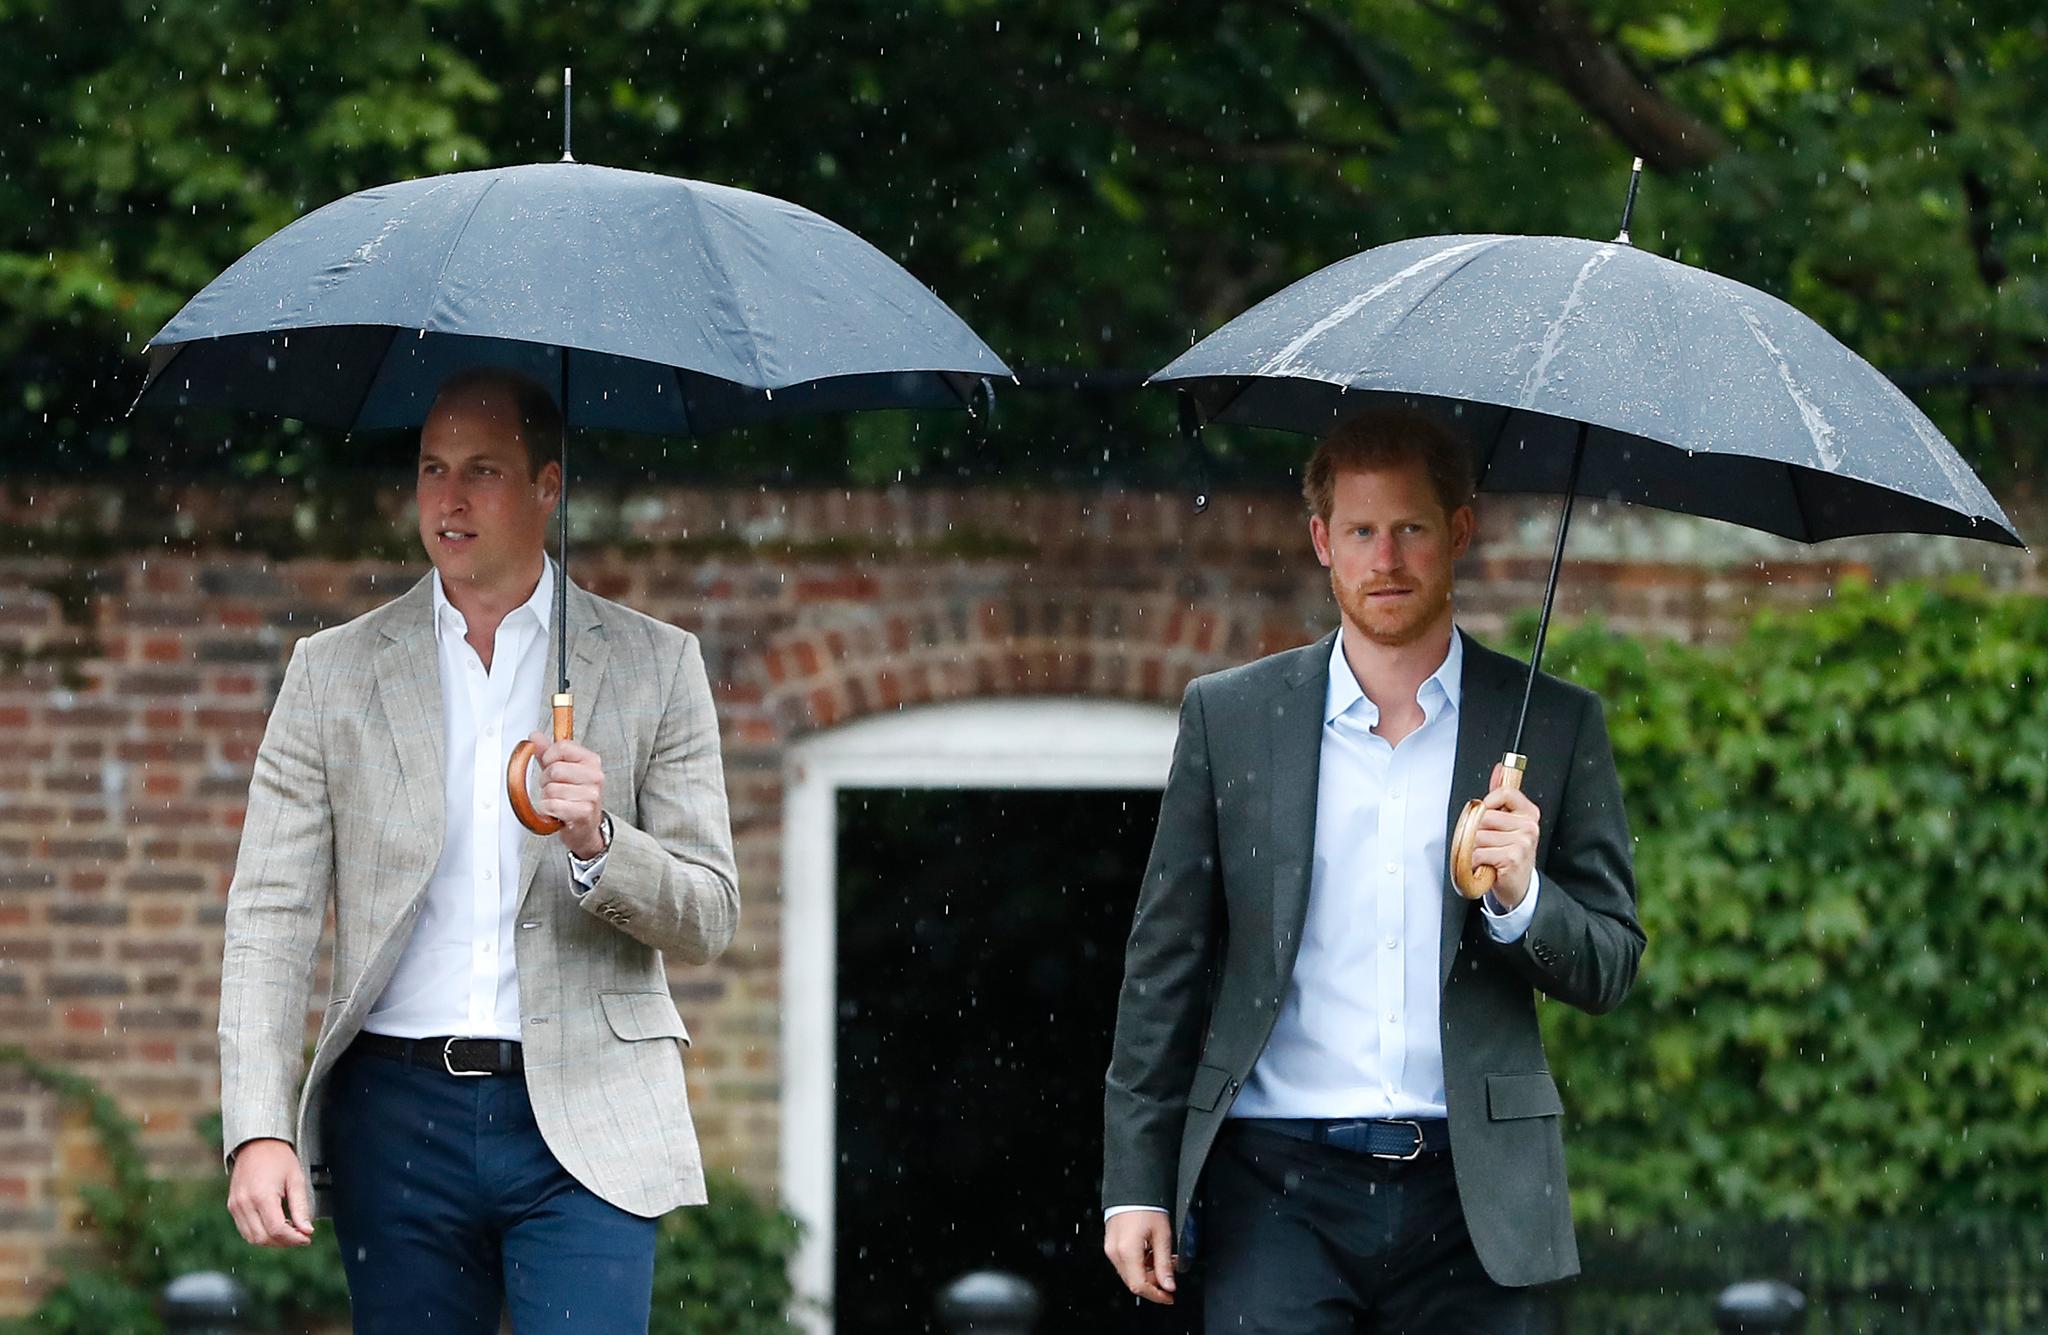 Både brødrene prins William og prins Harrys forhold ble spekulert om, i britiske medier. Det ble også forholdet mellom konene deres. 